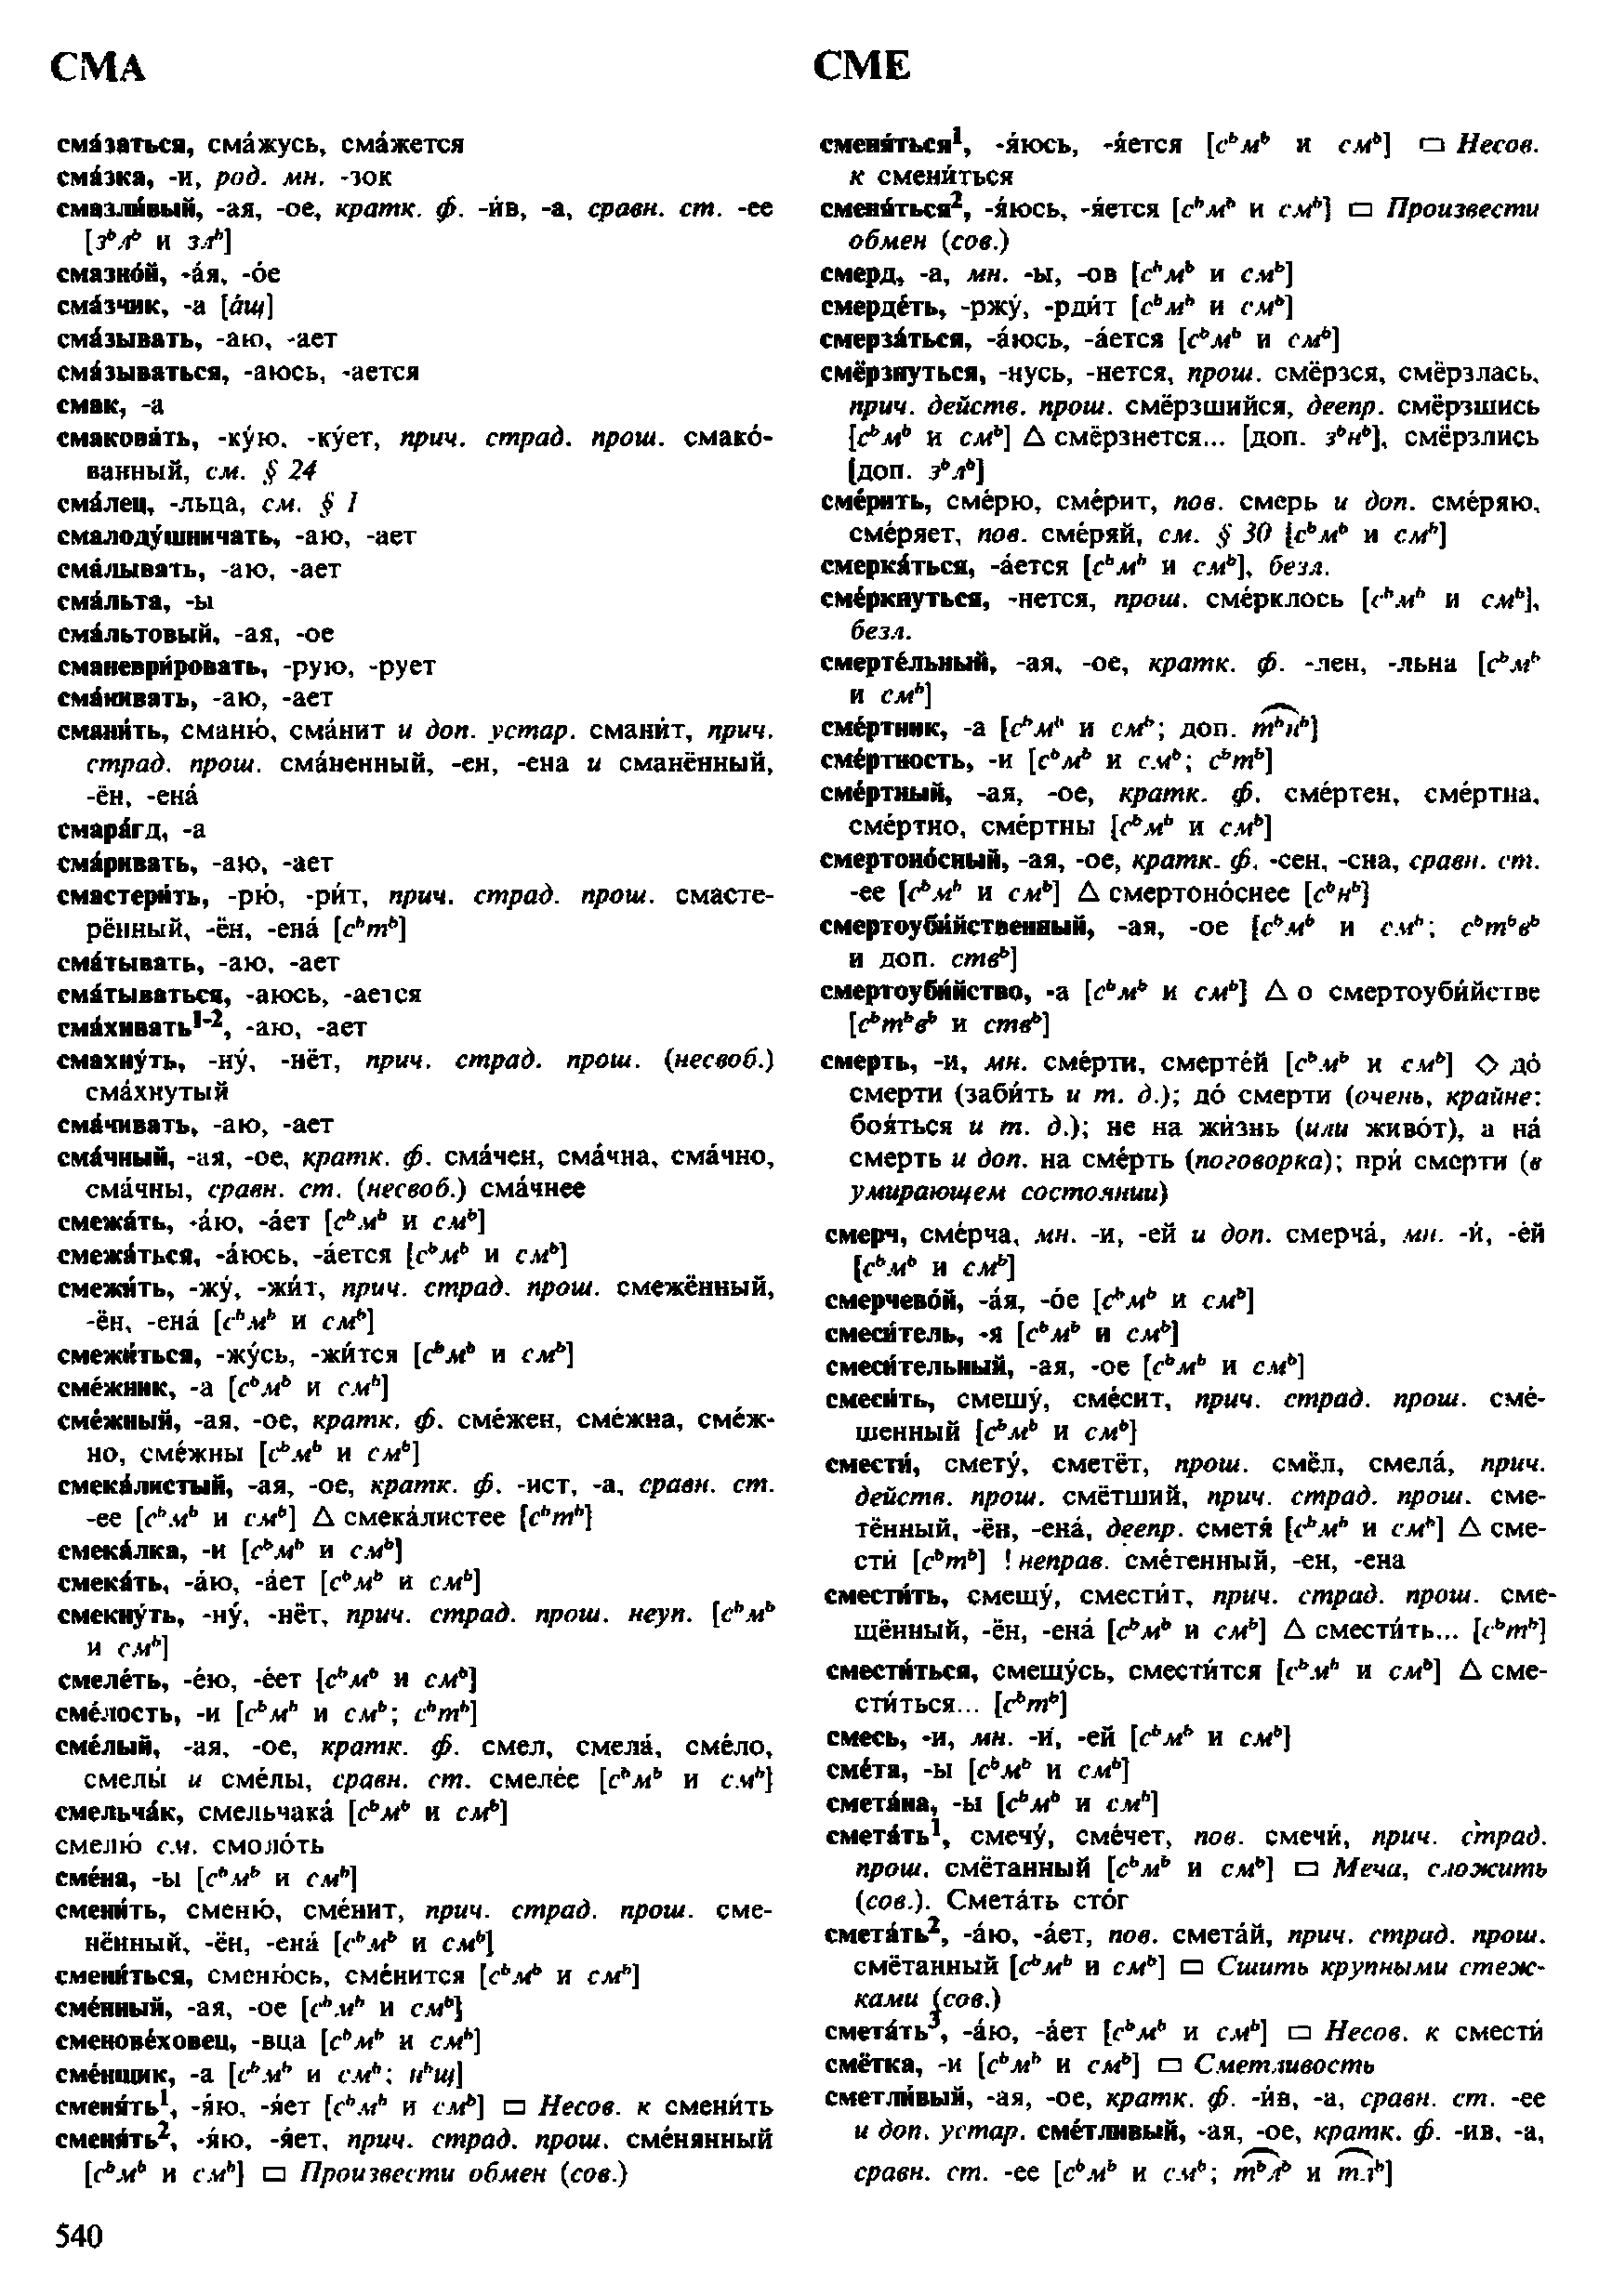 Фотокопия pdf / скан страницы 540 орфоэпического словаря под редакцией Аванесова (4 издание, 1988 год)